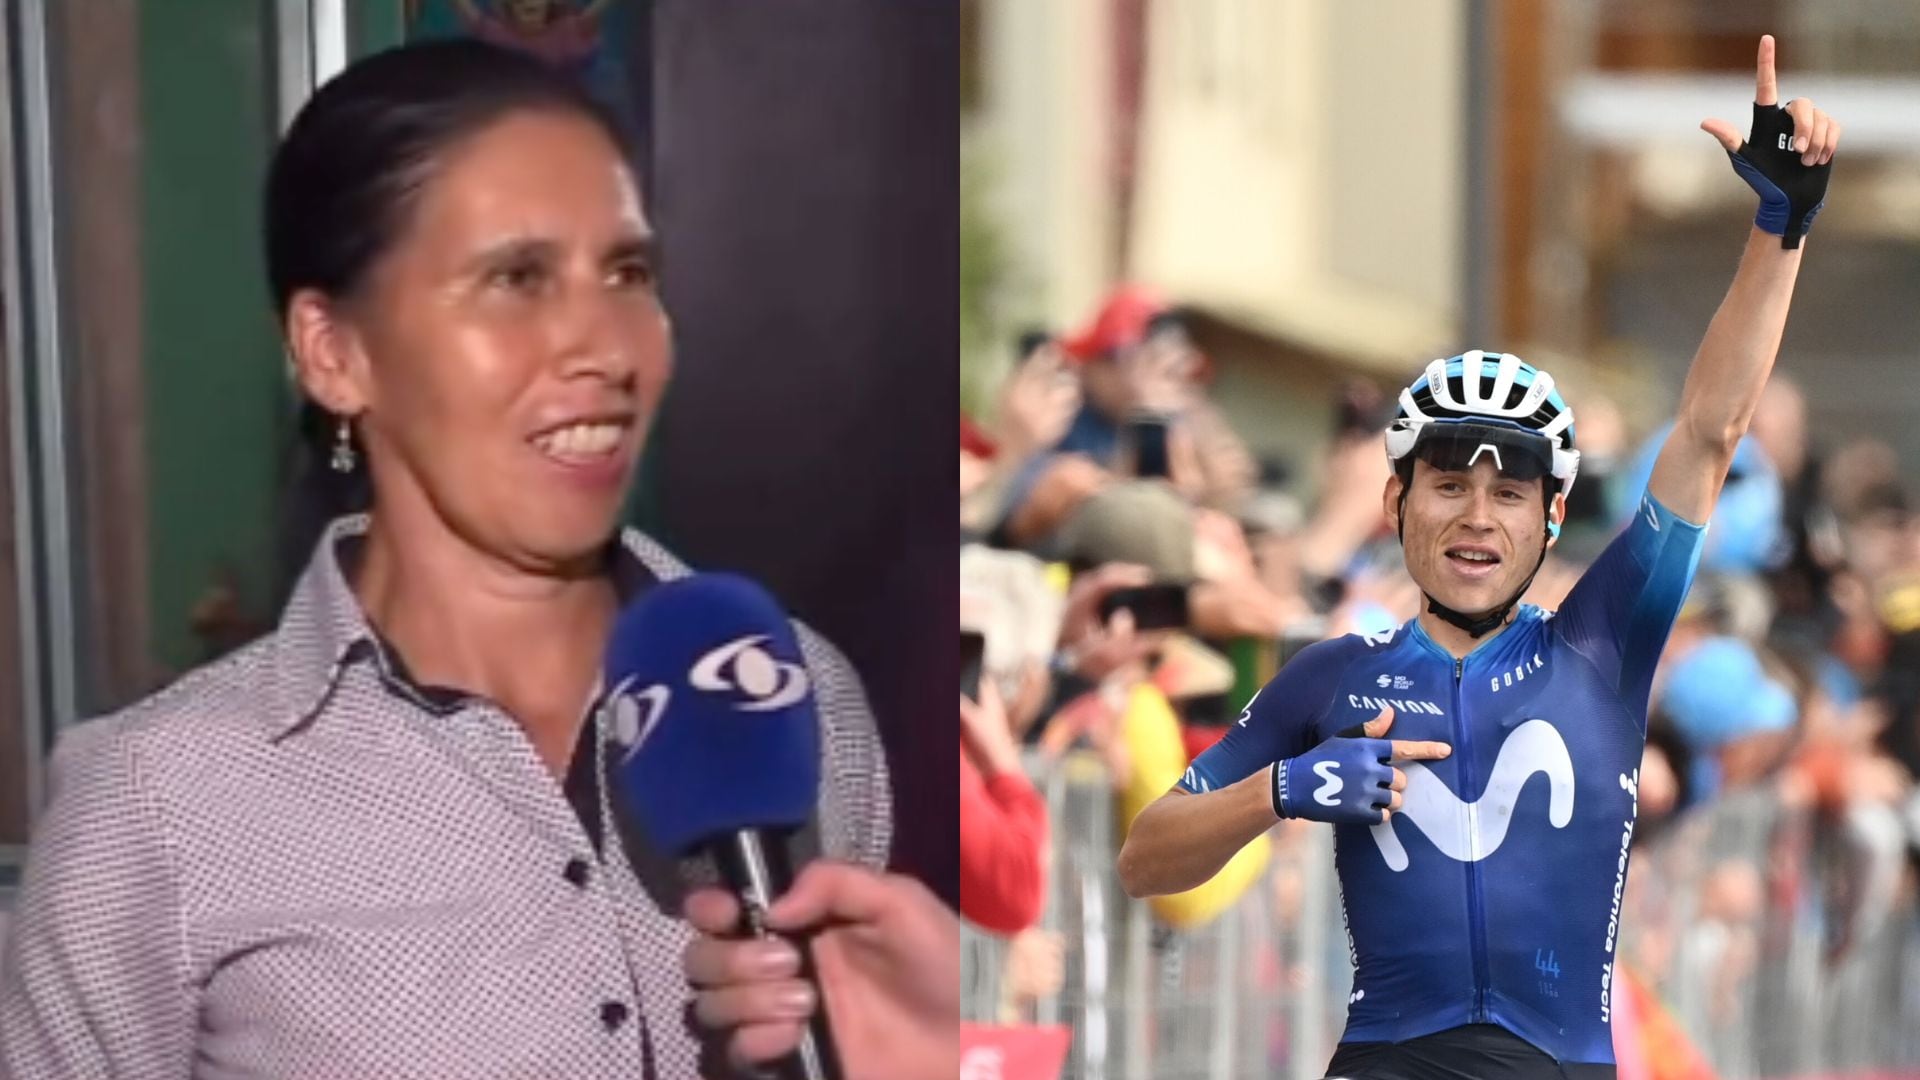 Mamá de Einer Rubio relató cómo vivió el triunfo de su hijo en el Giro de Italia.